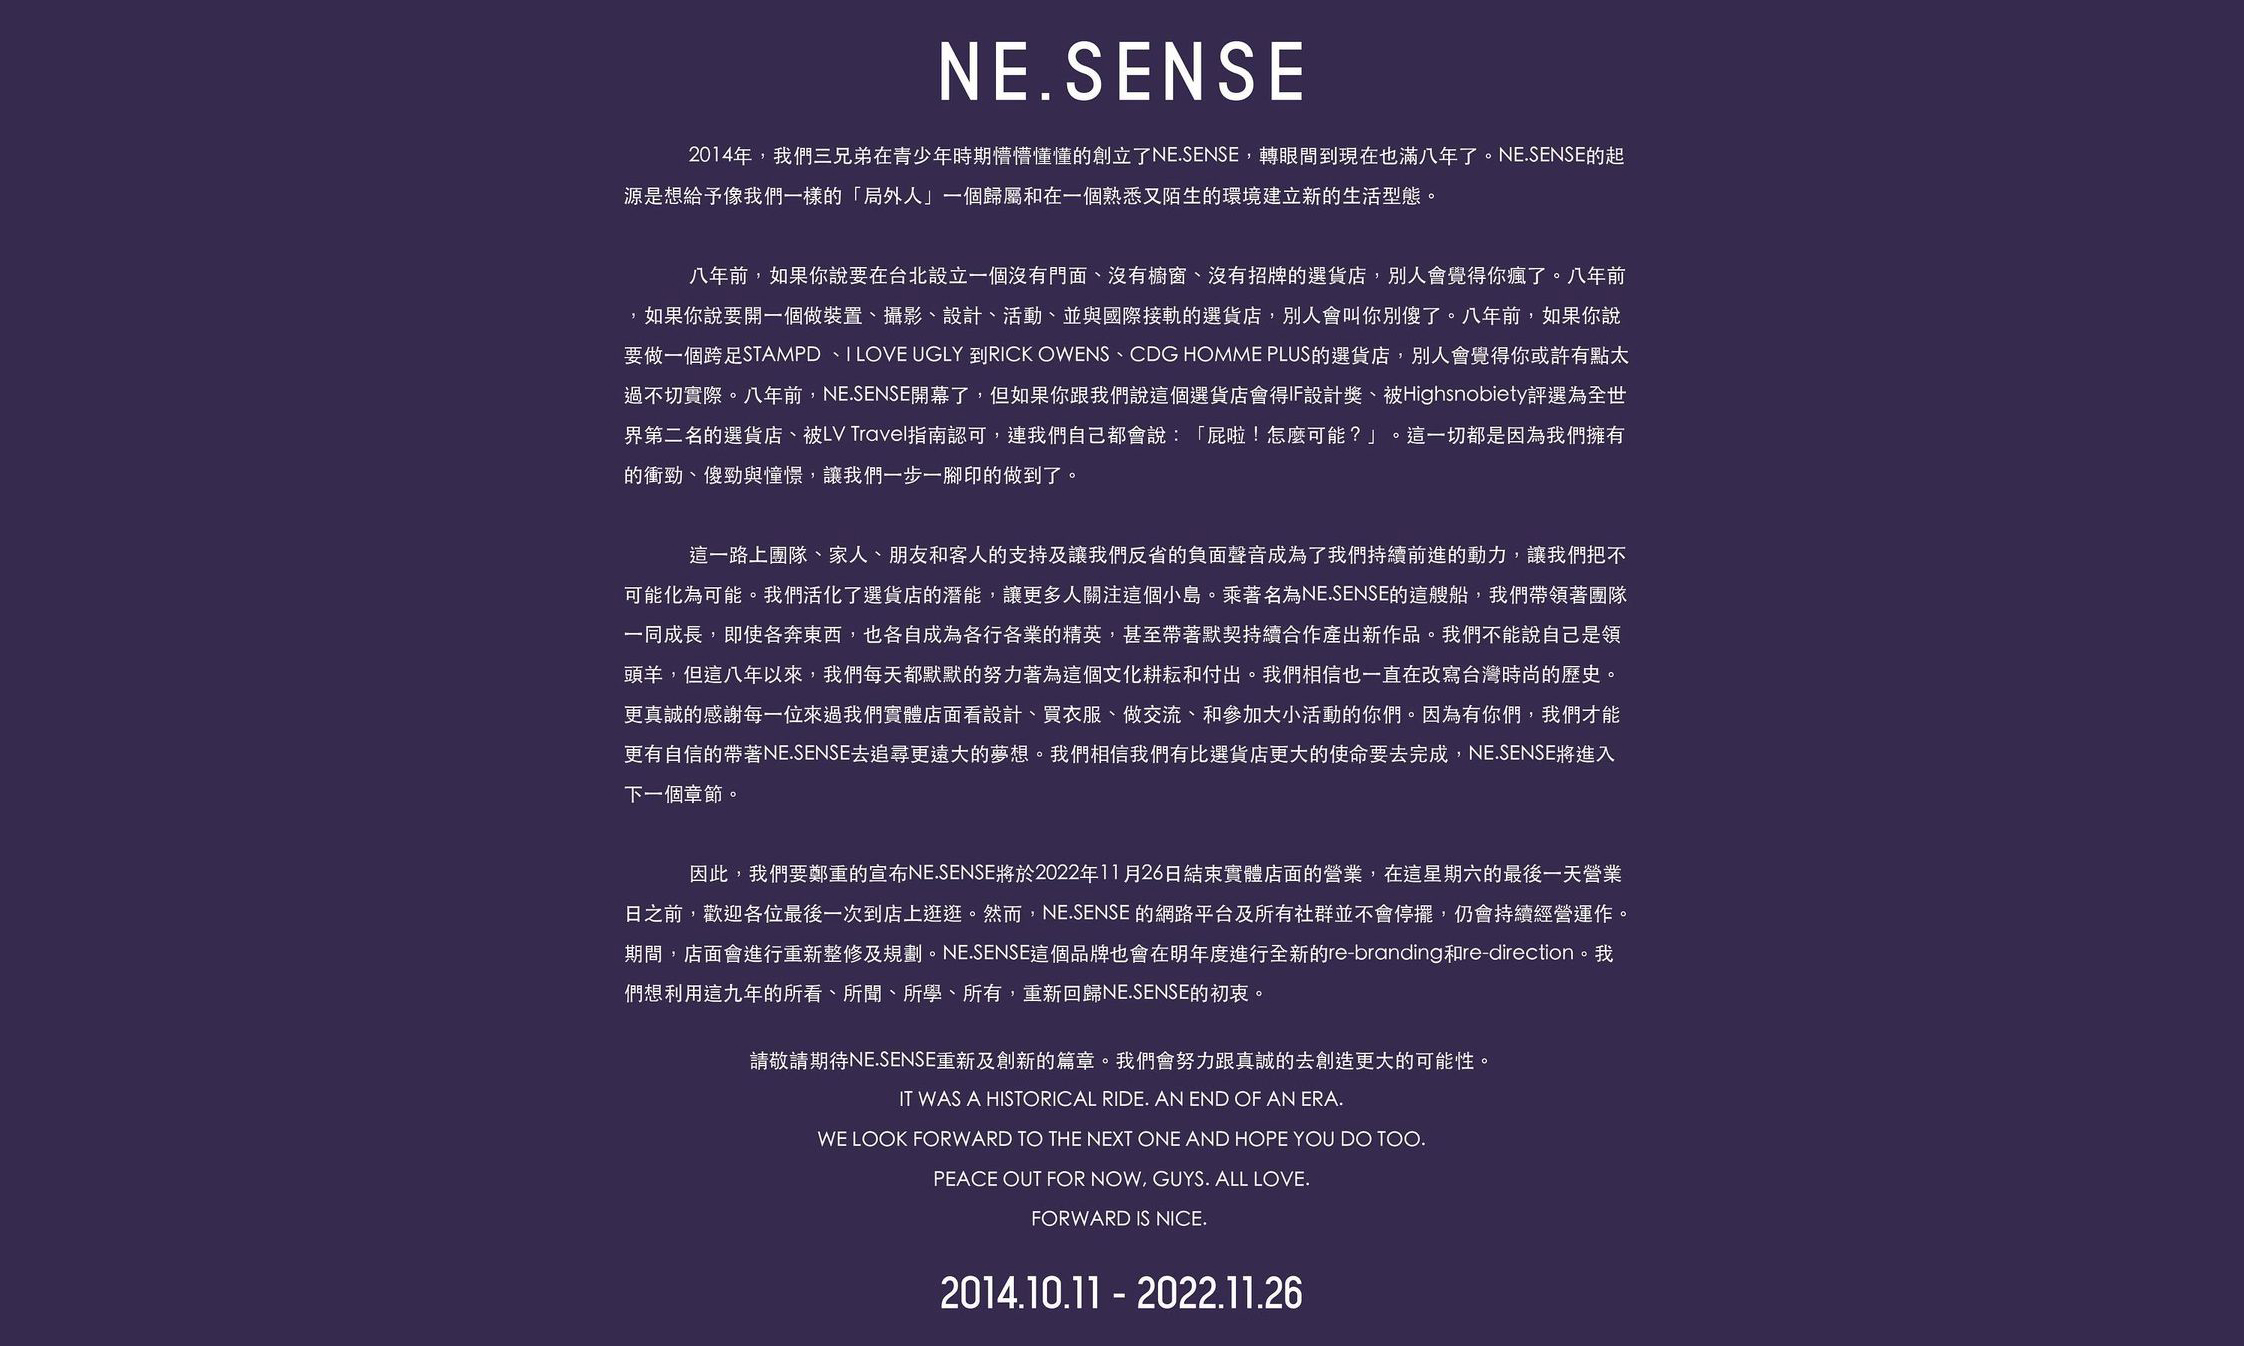 NE.SENSE 宣布结束实体门店营业